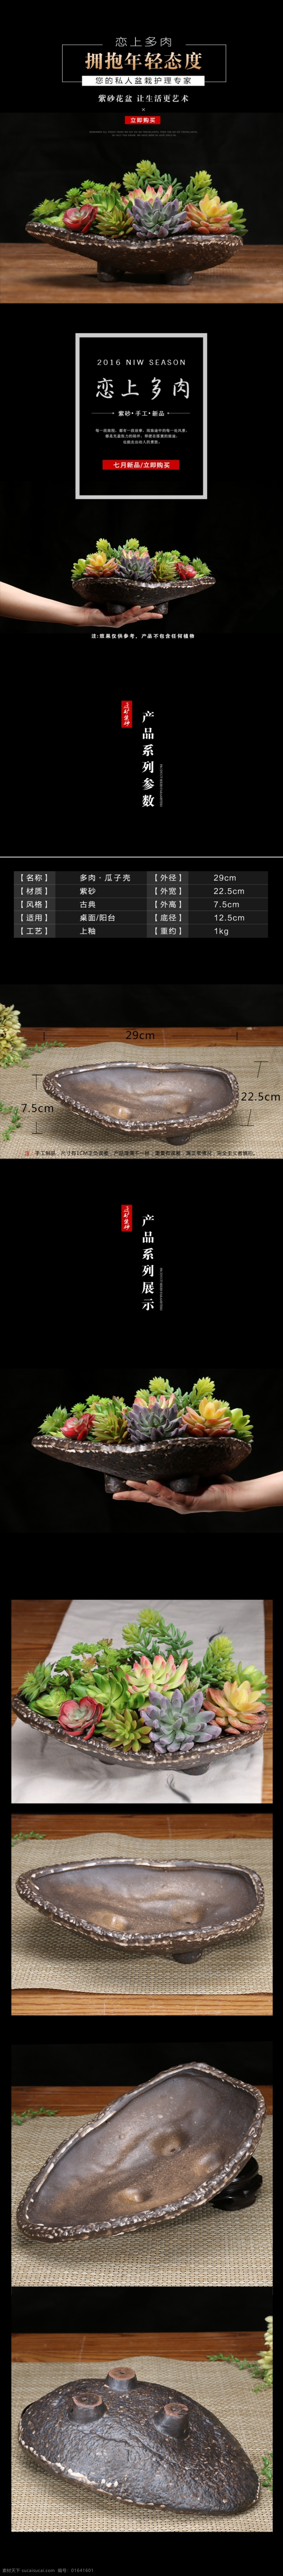 京东 天猫 淘宝 详情 页 肉 植物 紫砂 花盆 描述 图 多肉植物 小 全 手工 紫砂小花盆 黑色